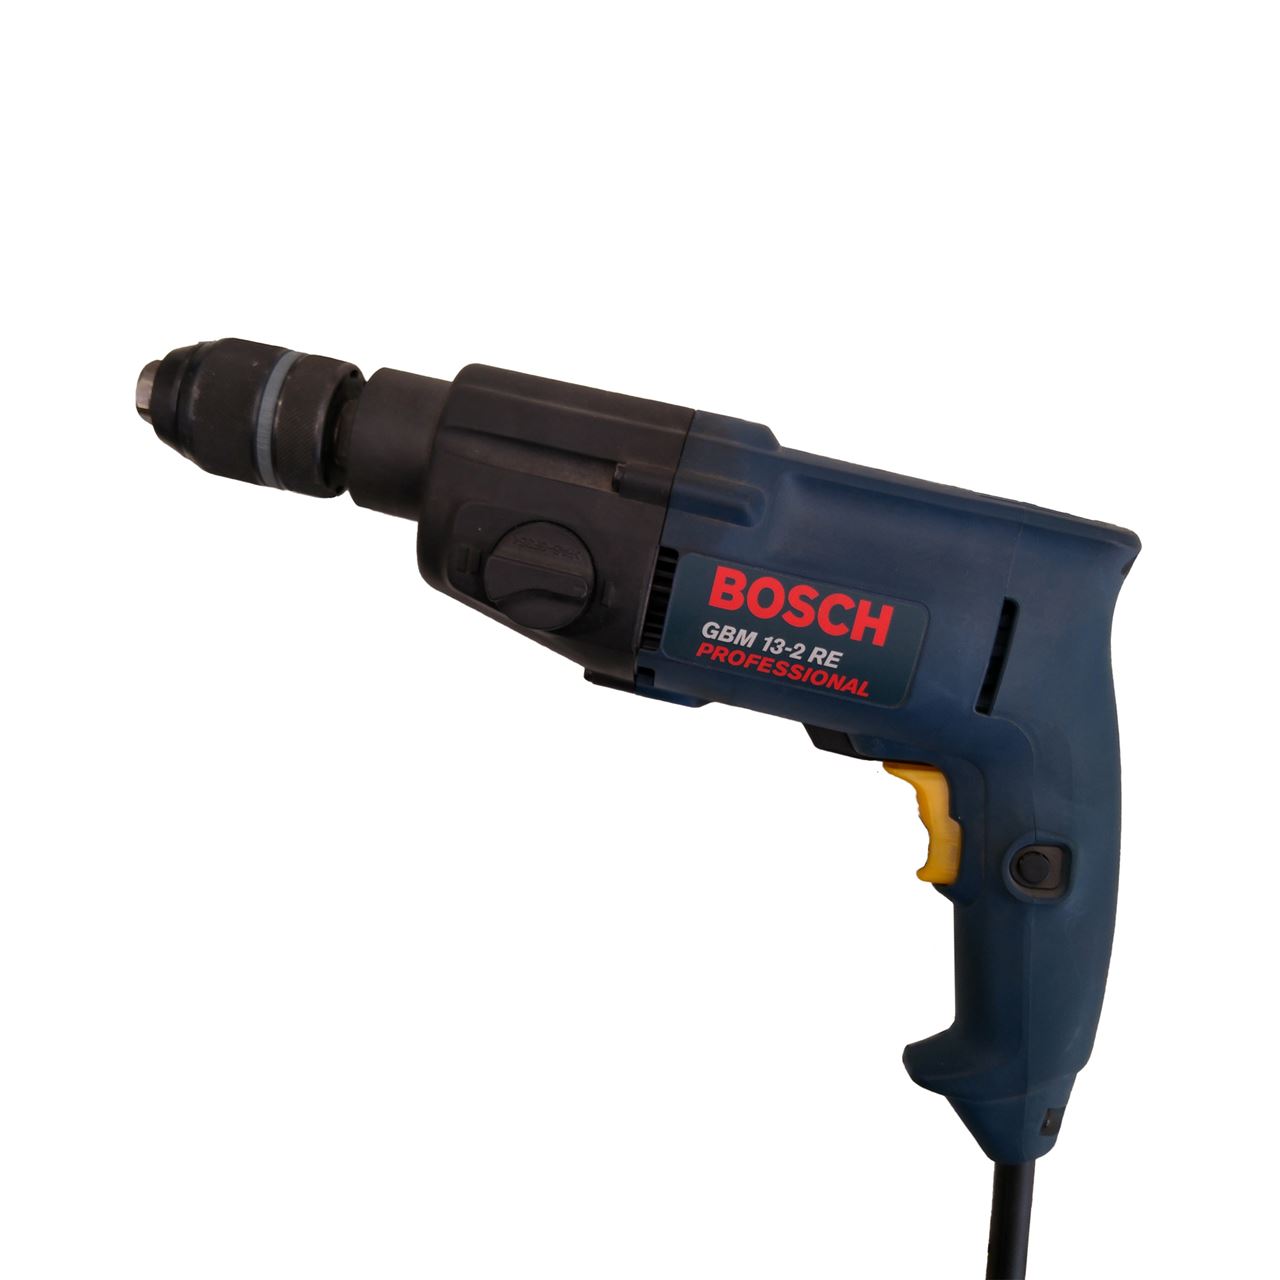 Taladro Bosch GBM 13-2 RE 550 w.